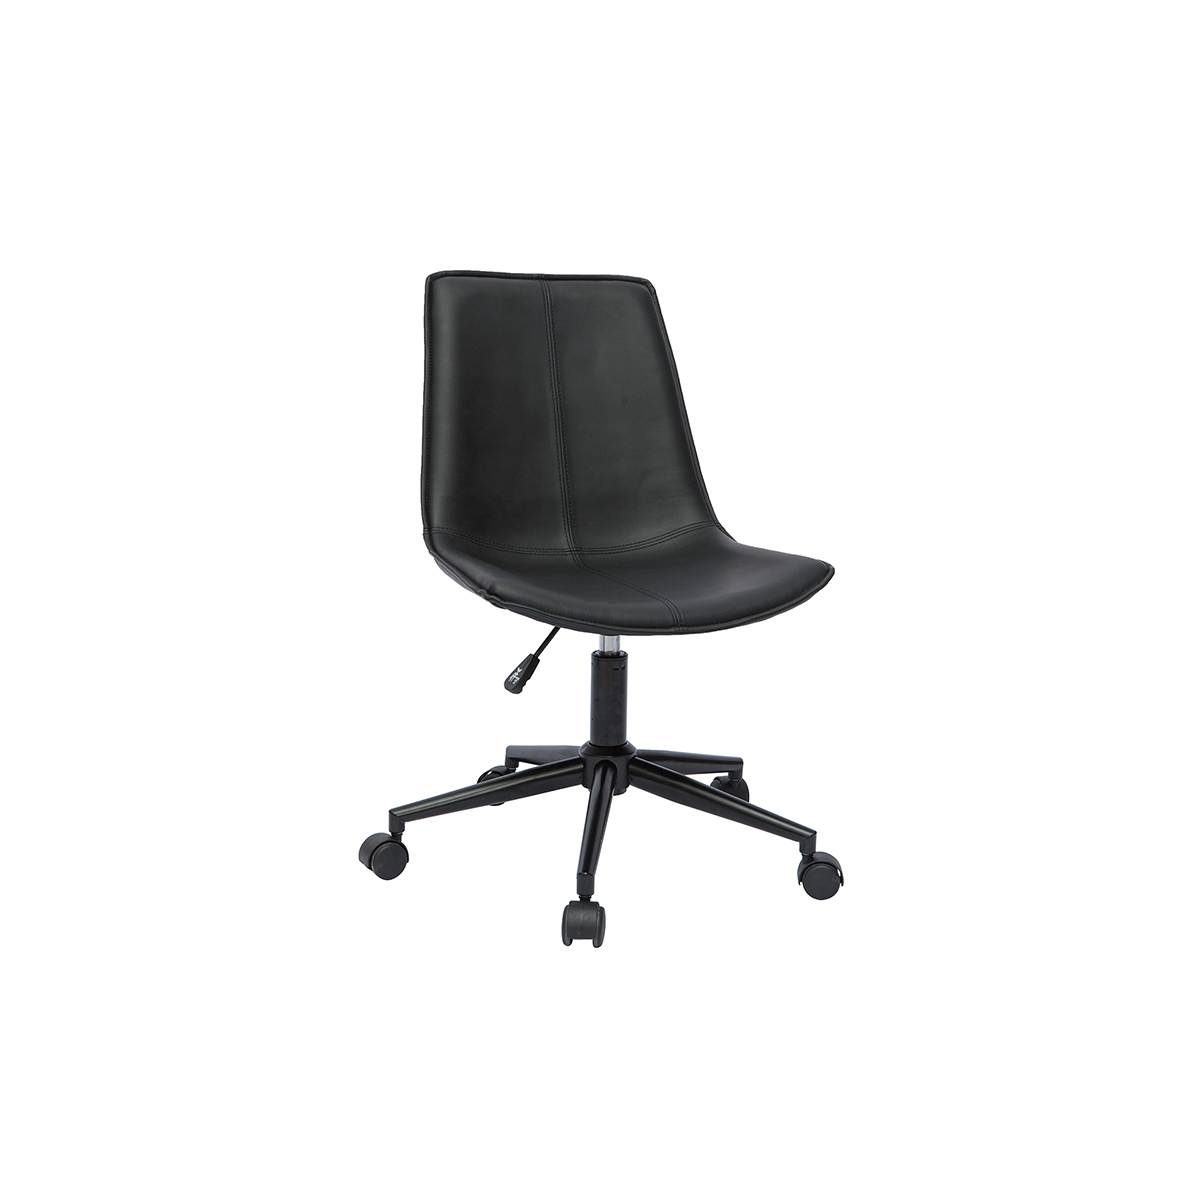 Chaise de bureau en polyuréthane noir et métal noir LISON vue1